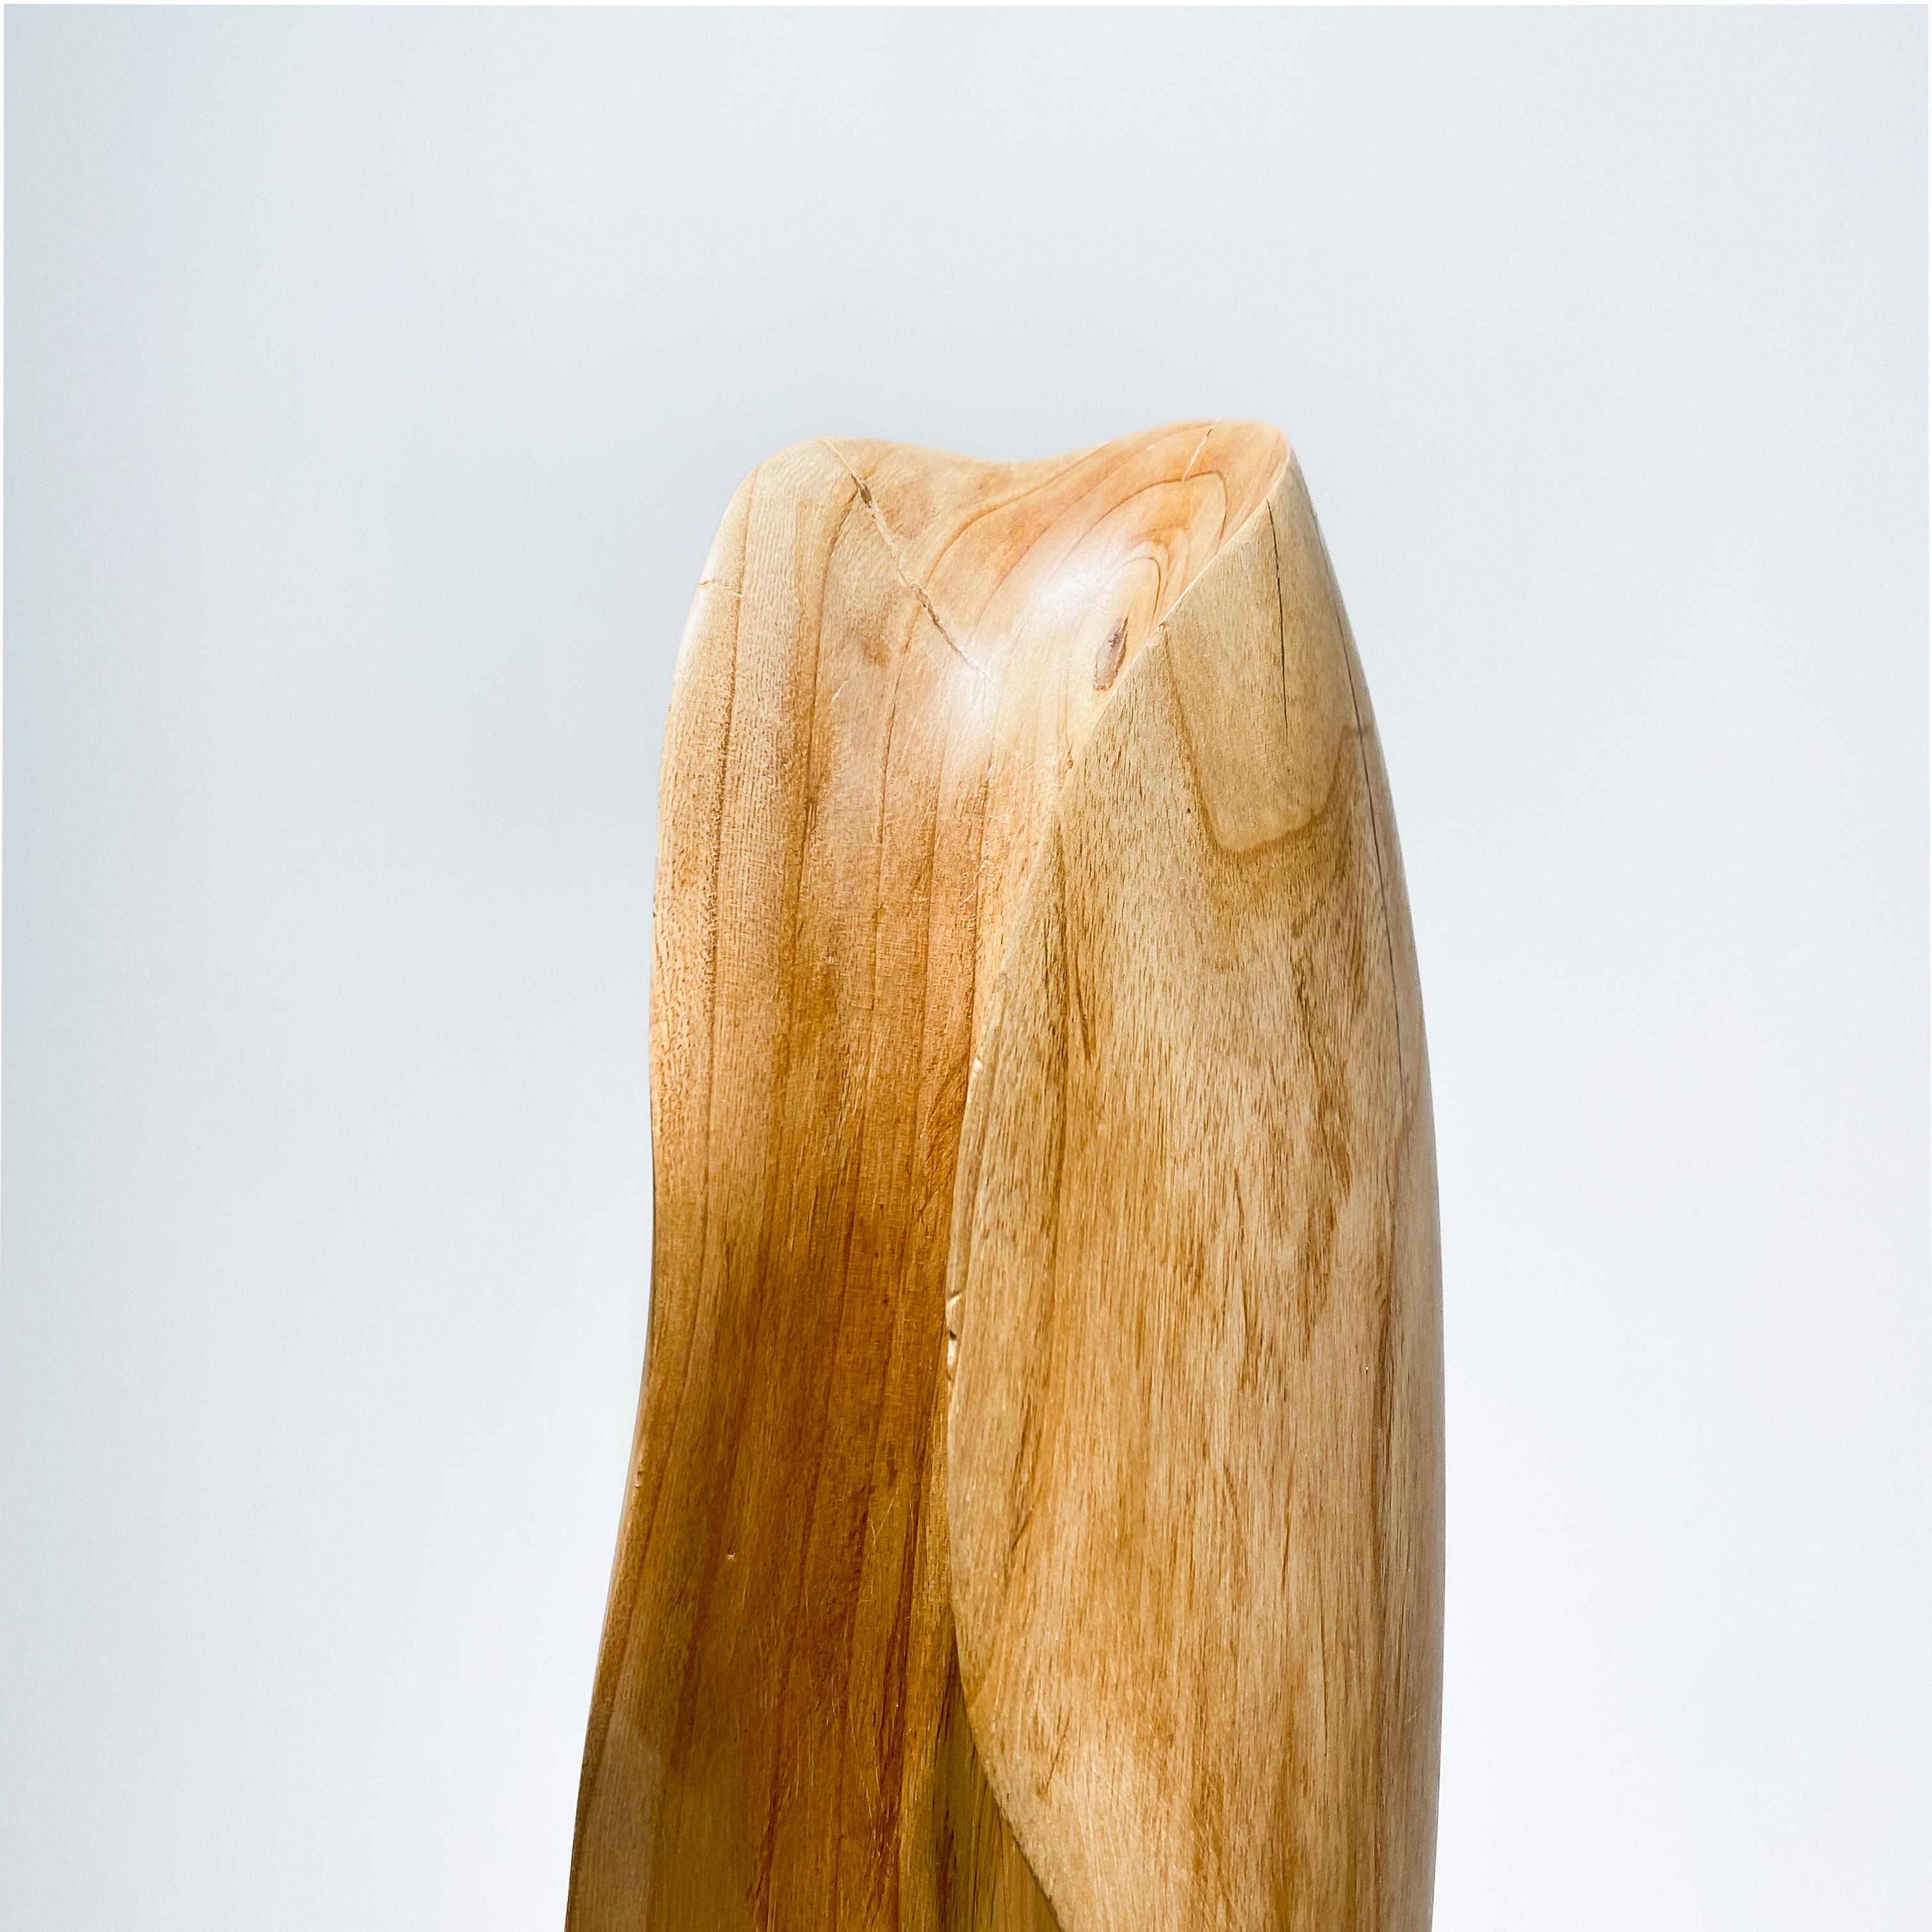 Brutalist / Wabi Sabi Midcentury Hand Carved Light Wood Sculpture, 1970s For Sale 7